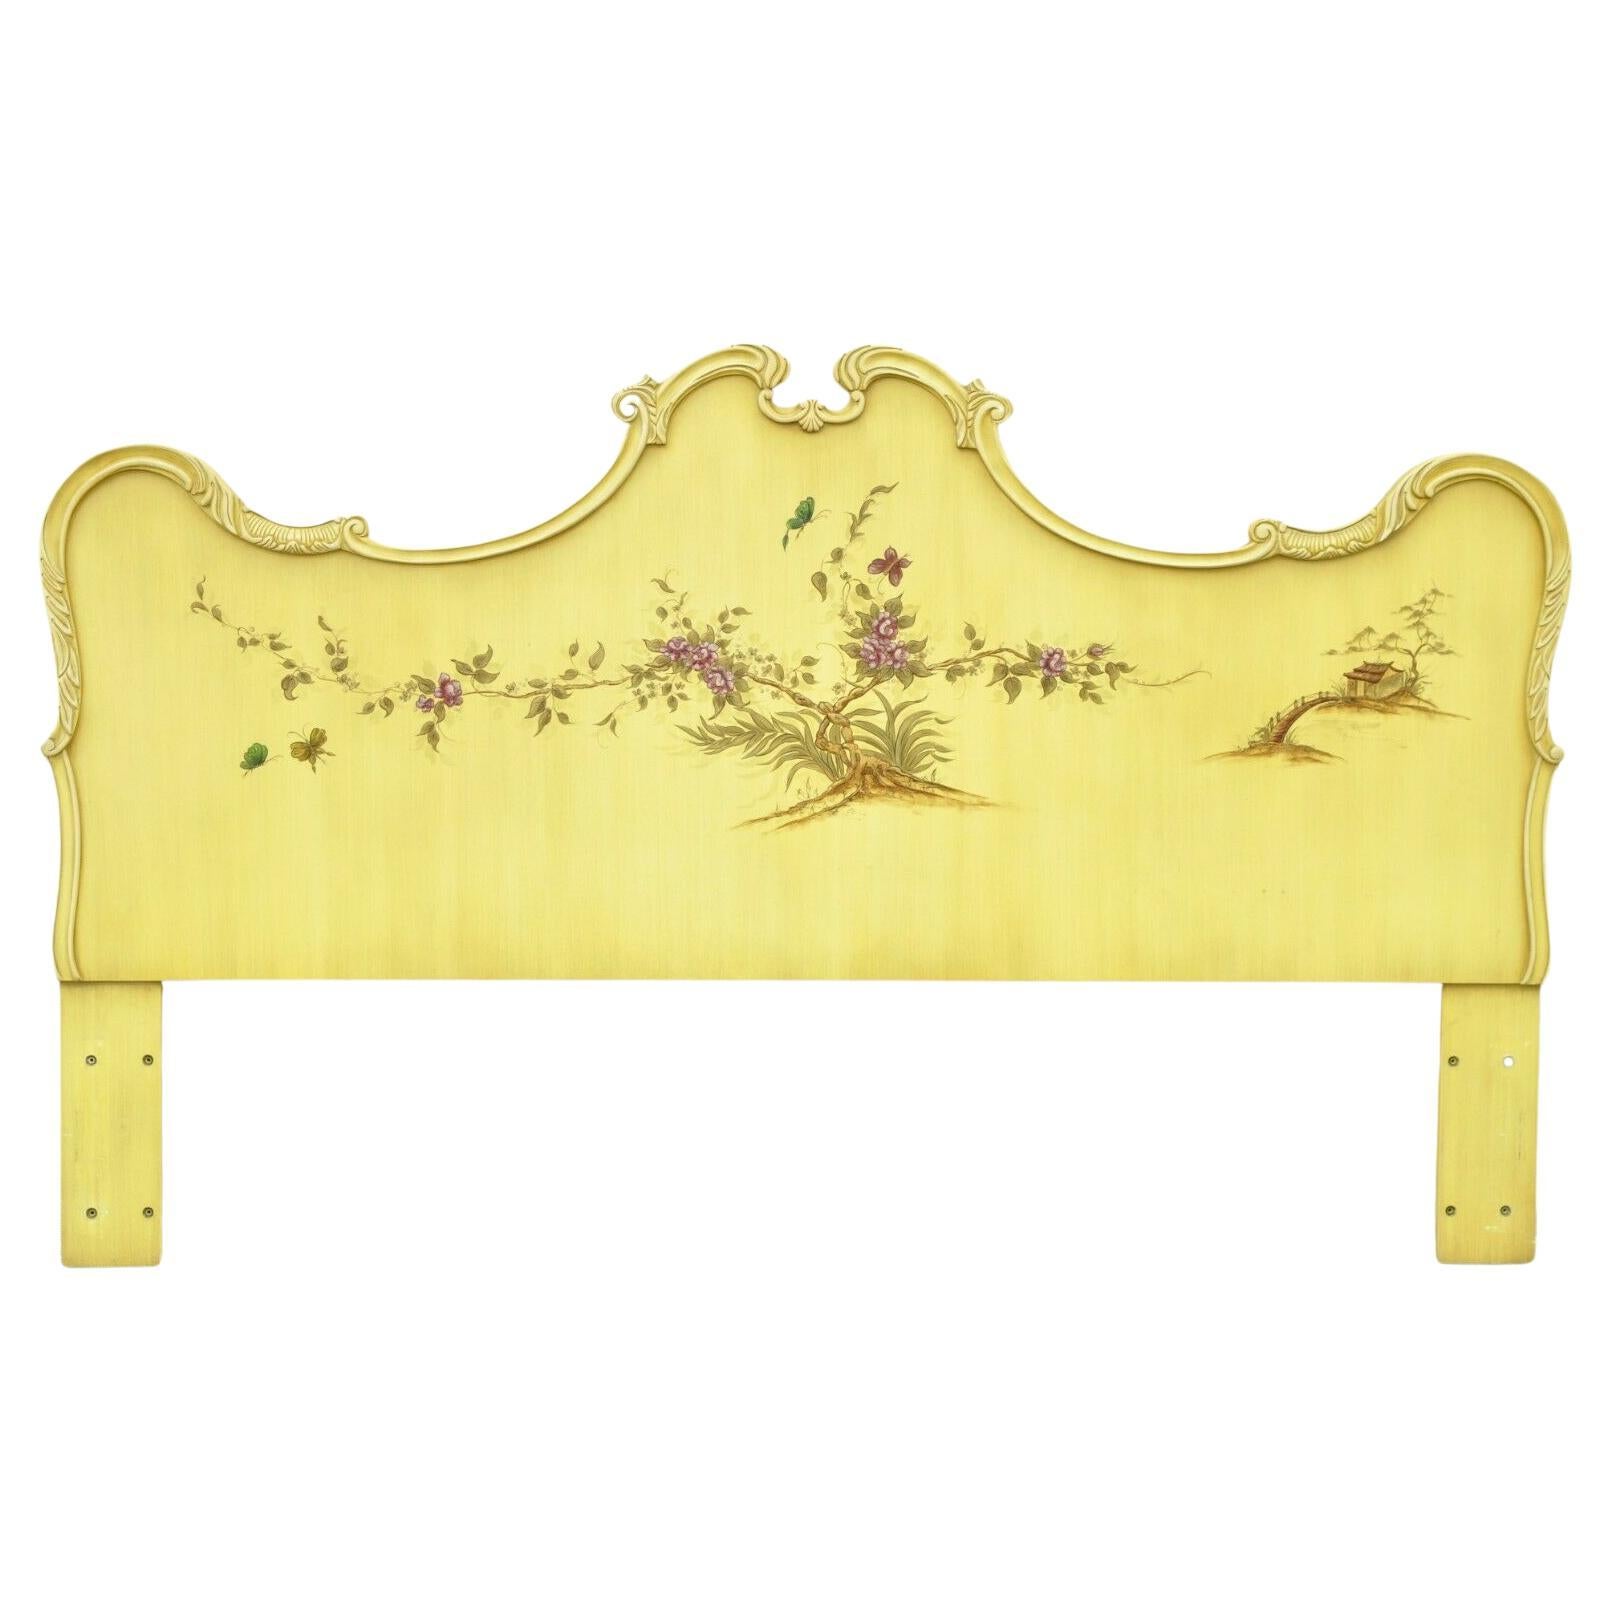 Tête de lit King Size décorée de peinture jaune de style Chinoiserie nationale de l'Union nationale